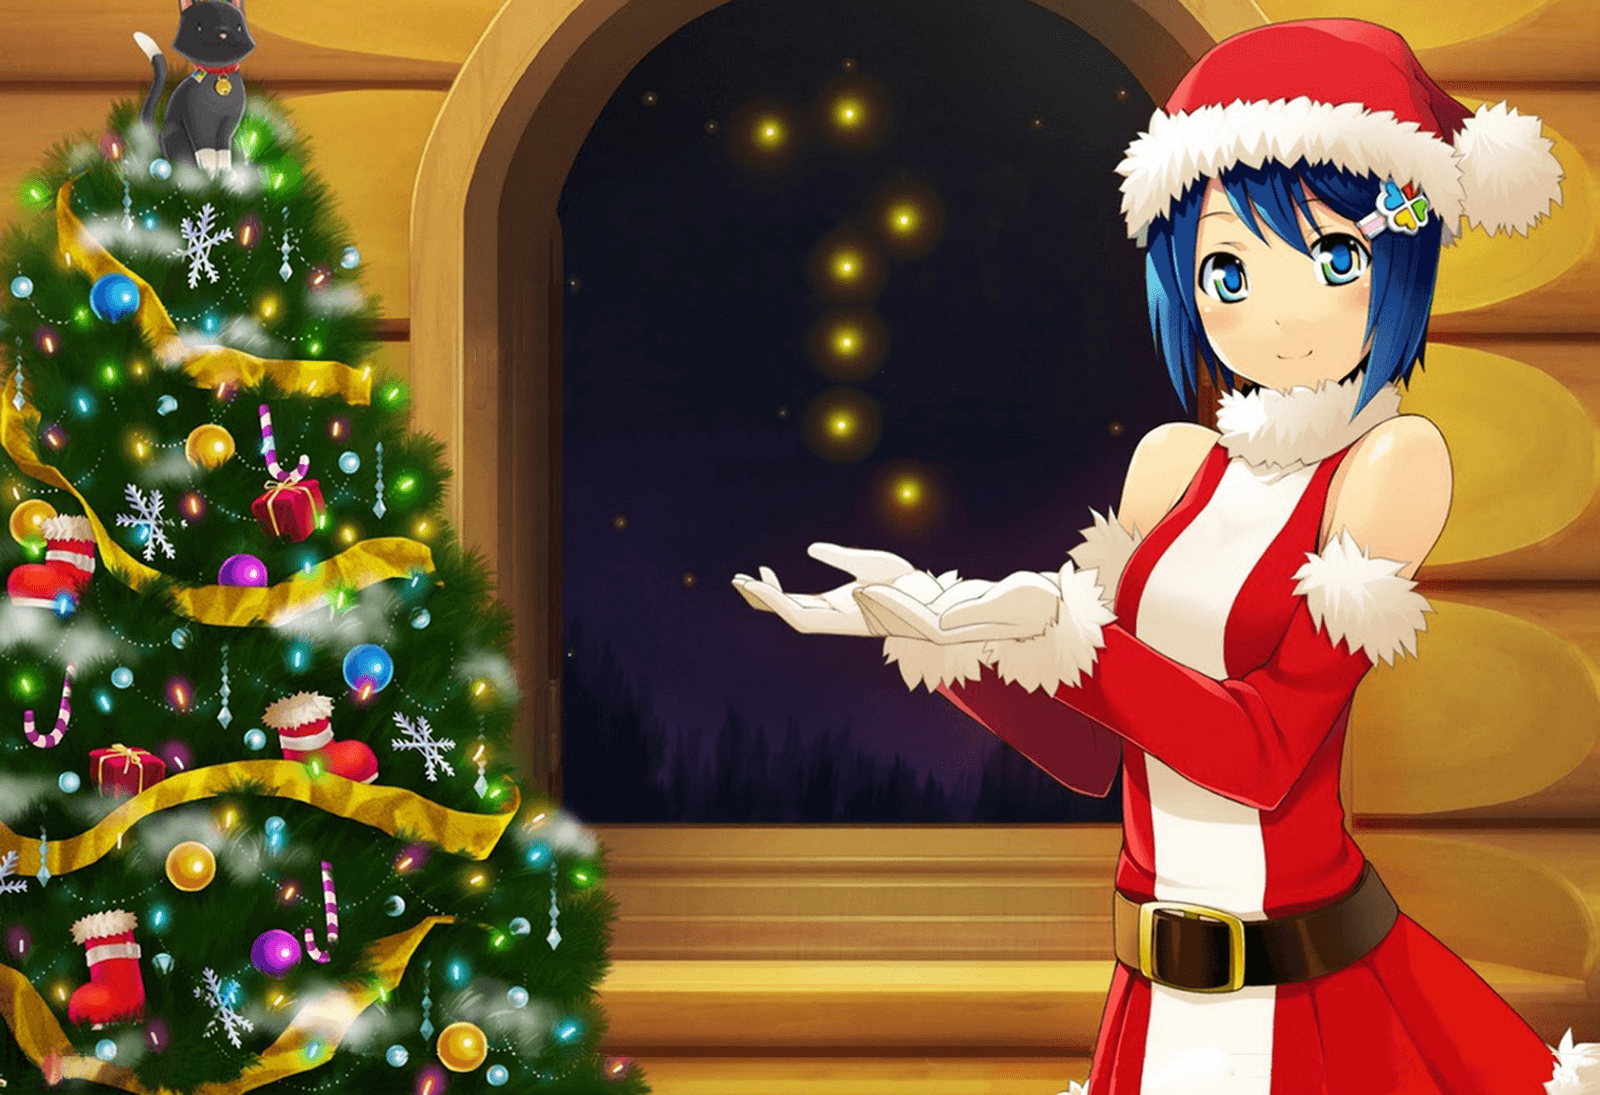 Barrichan: Christmas Holiday Anime Background [3 of 4]